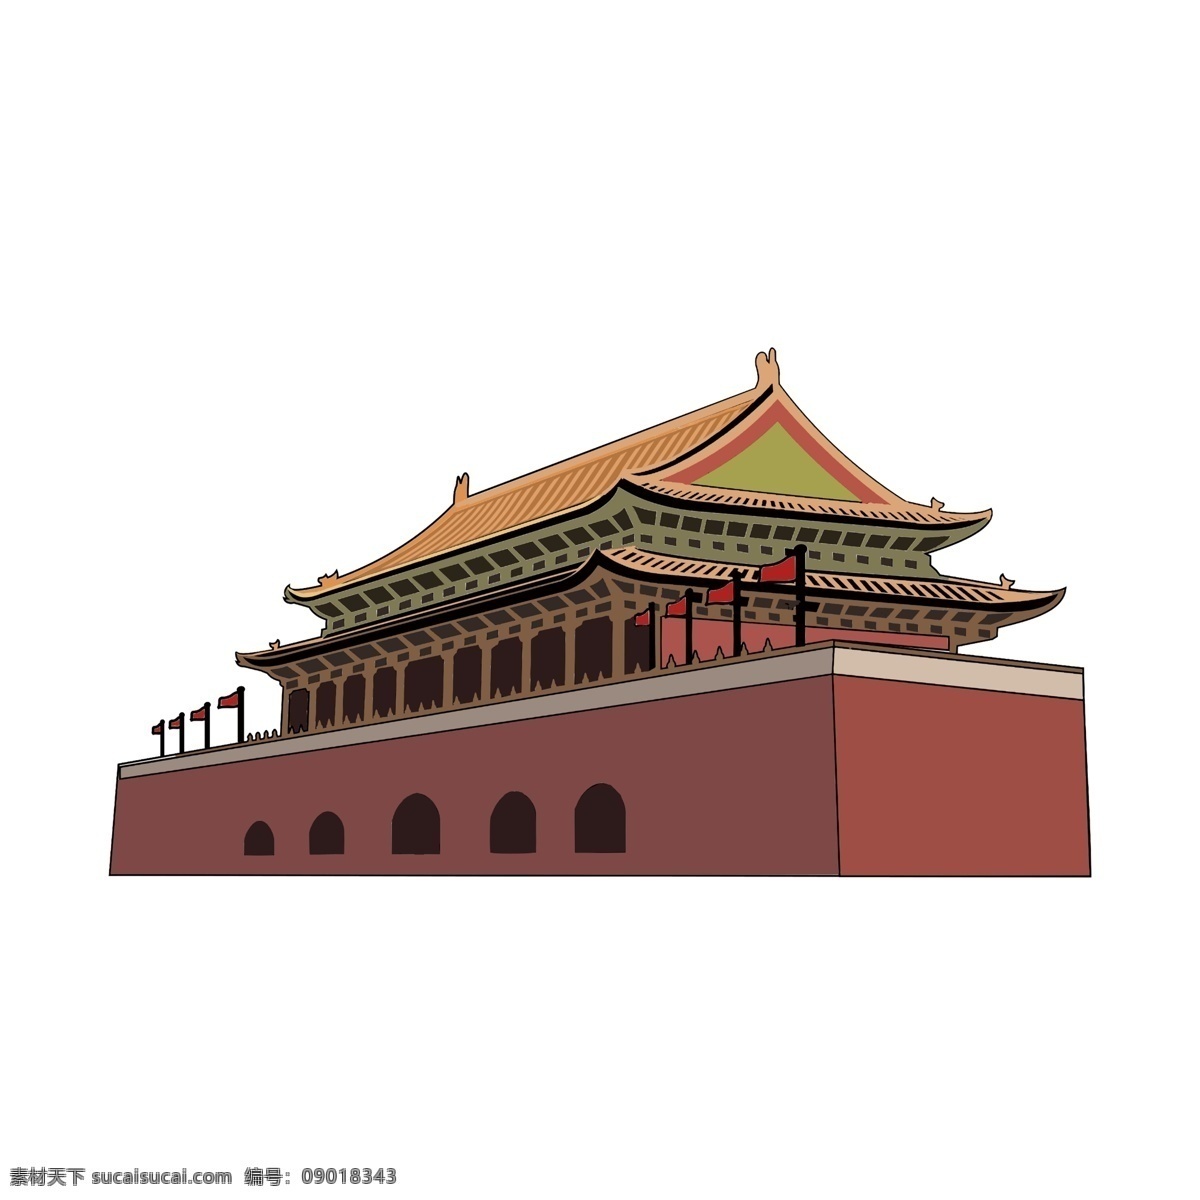 国内 名胜古迹 建筑 北京 天安门 手绘 国内建筑 国内外建筑 手绘建筑 仿古建筑 古代建筑